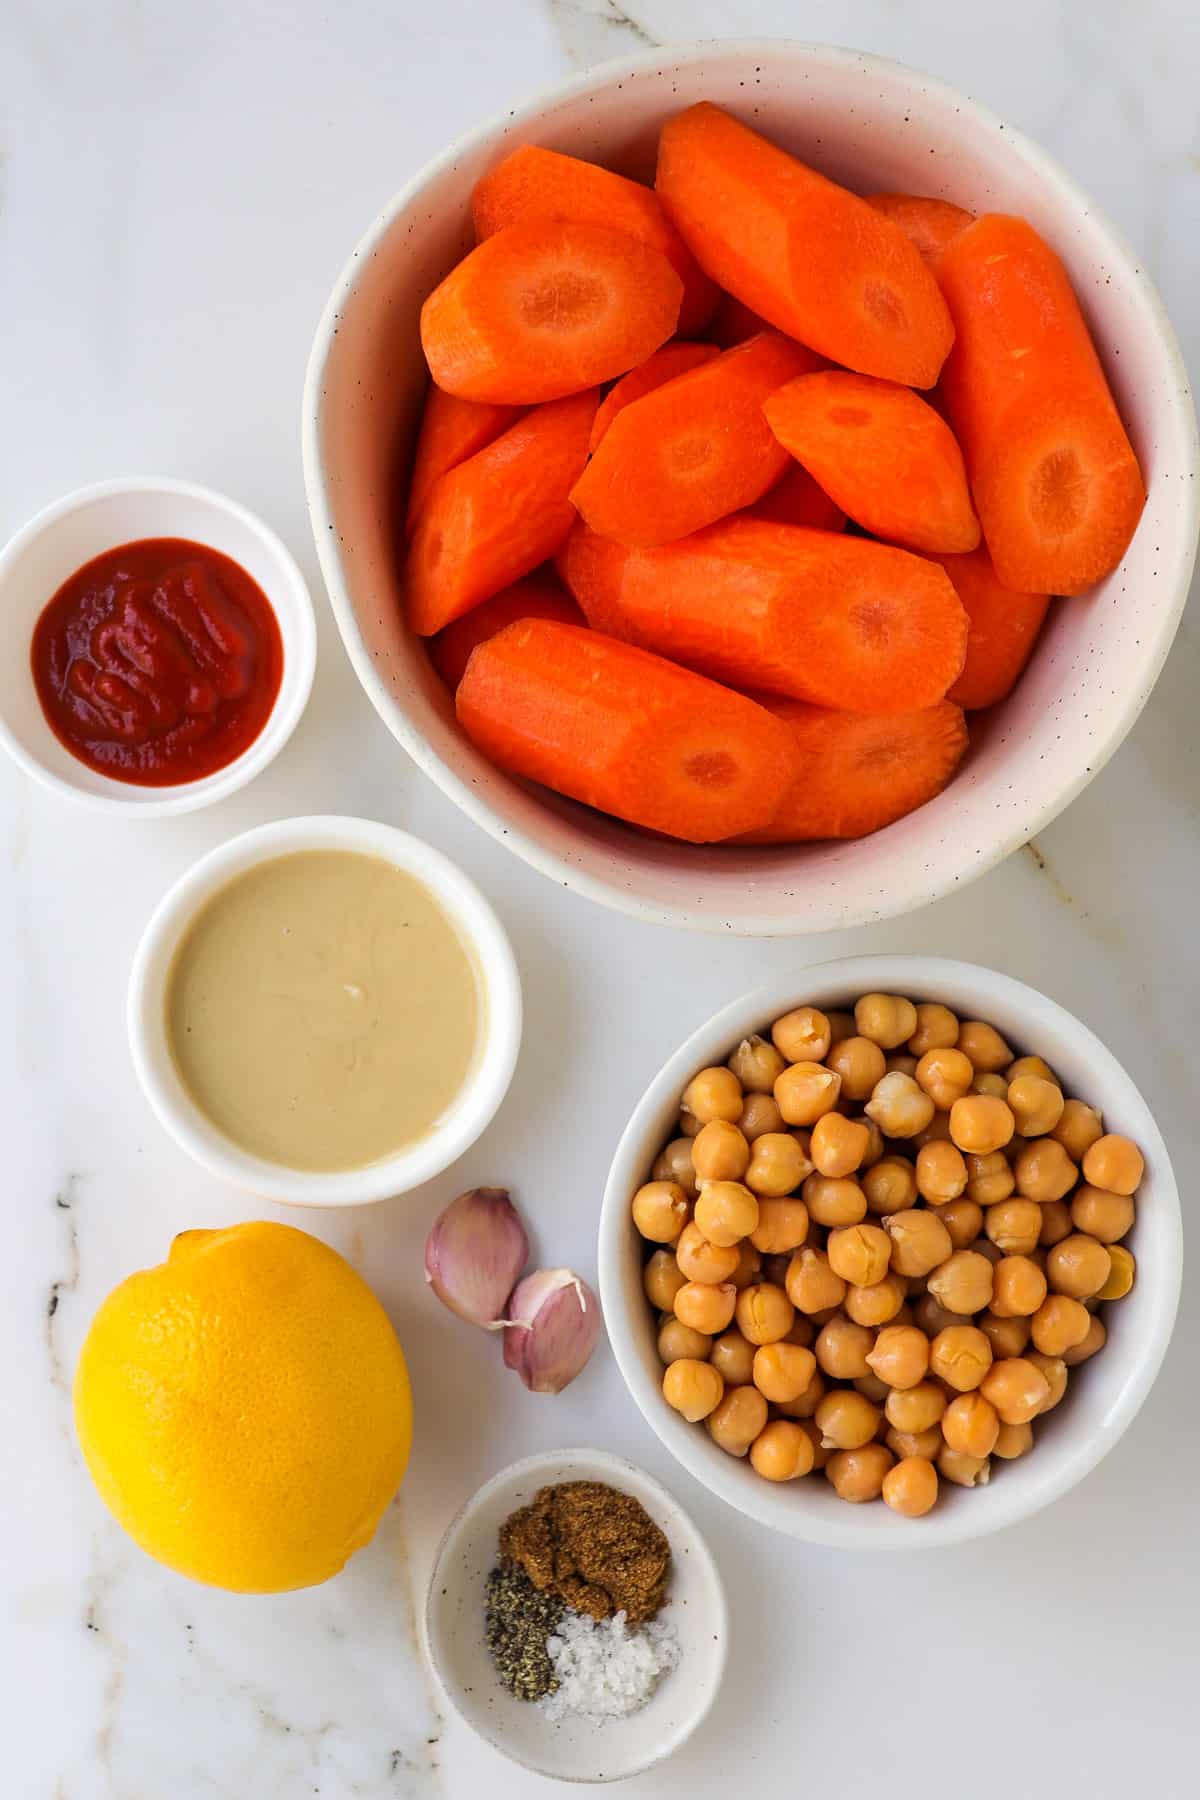 Ingredients to make carrot smirch hummus.